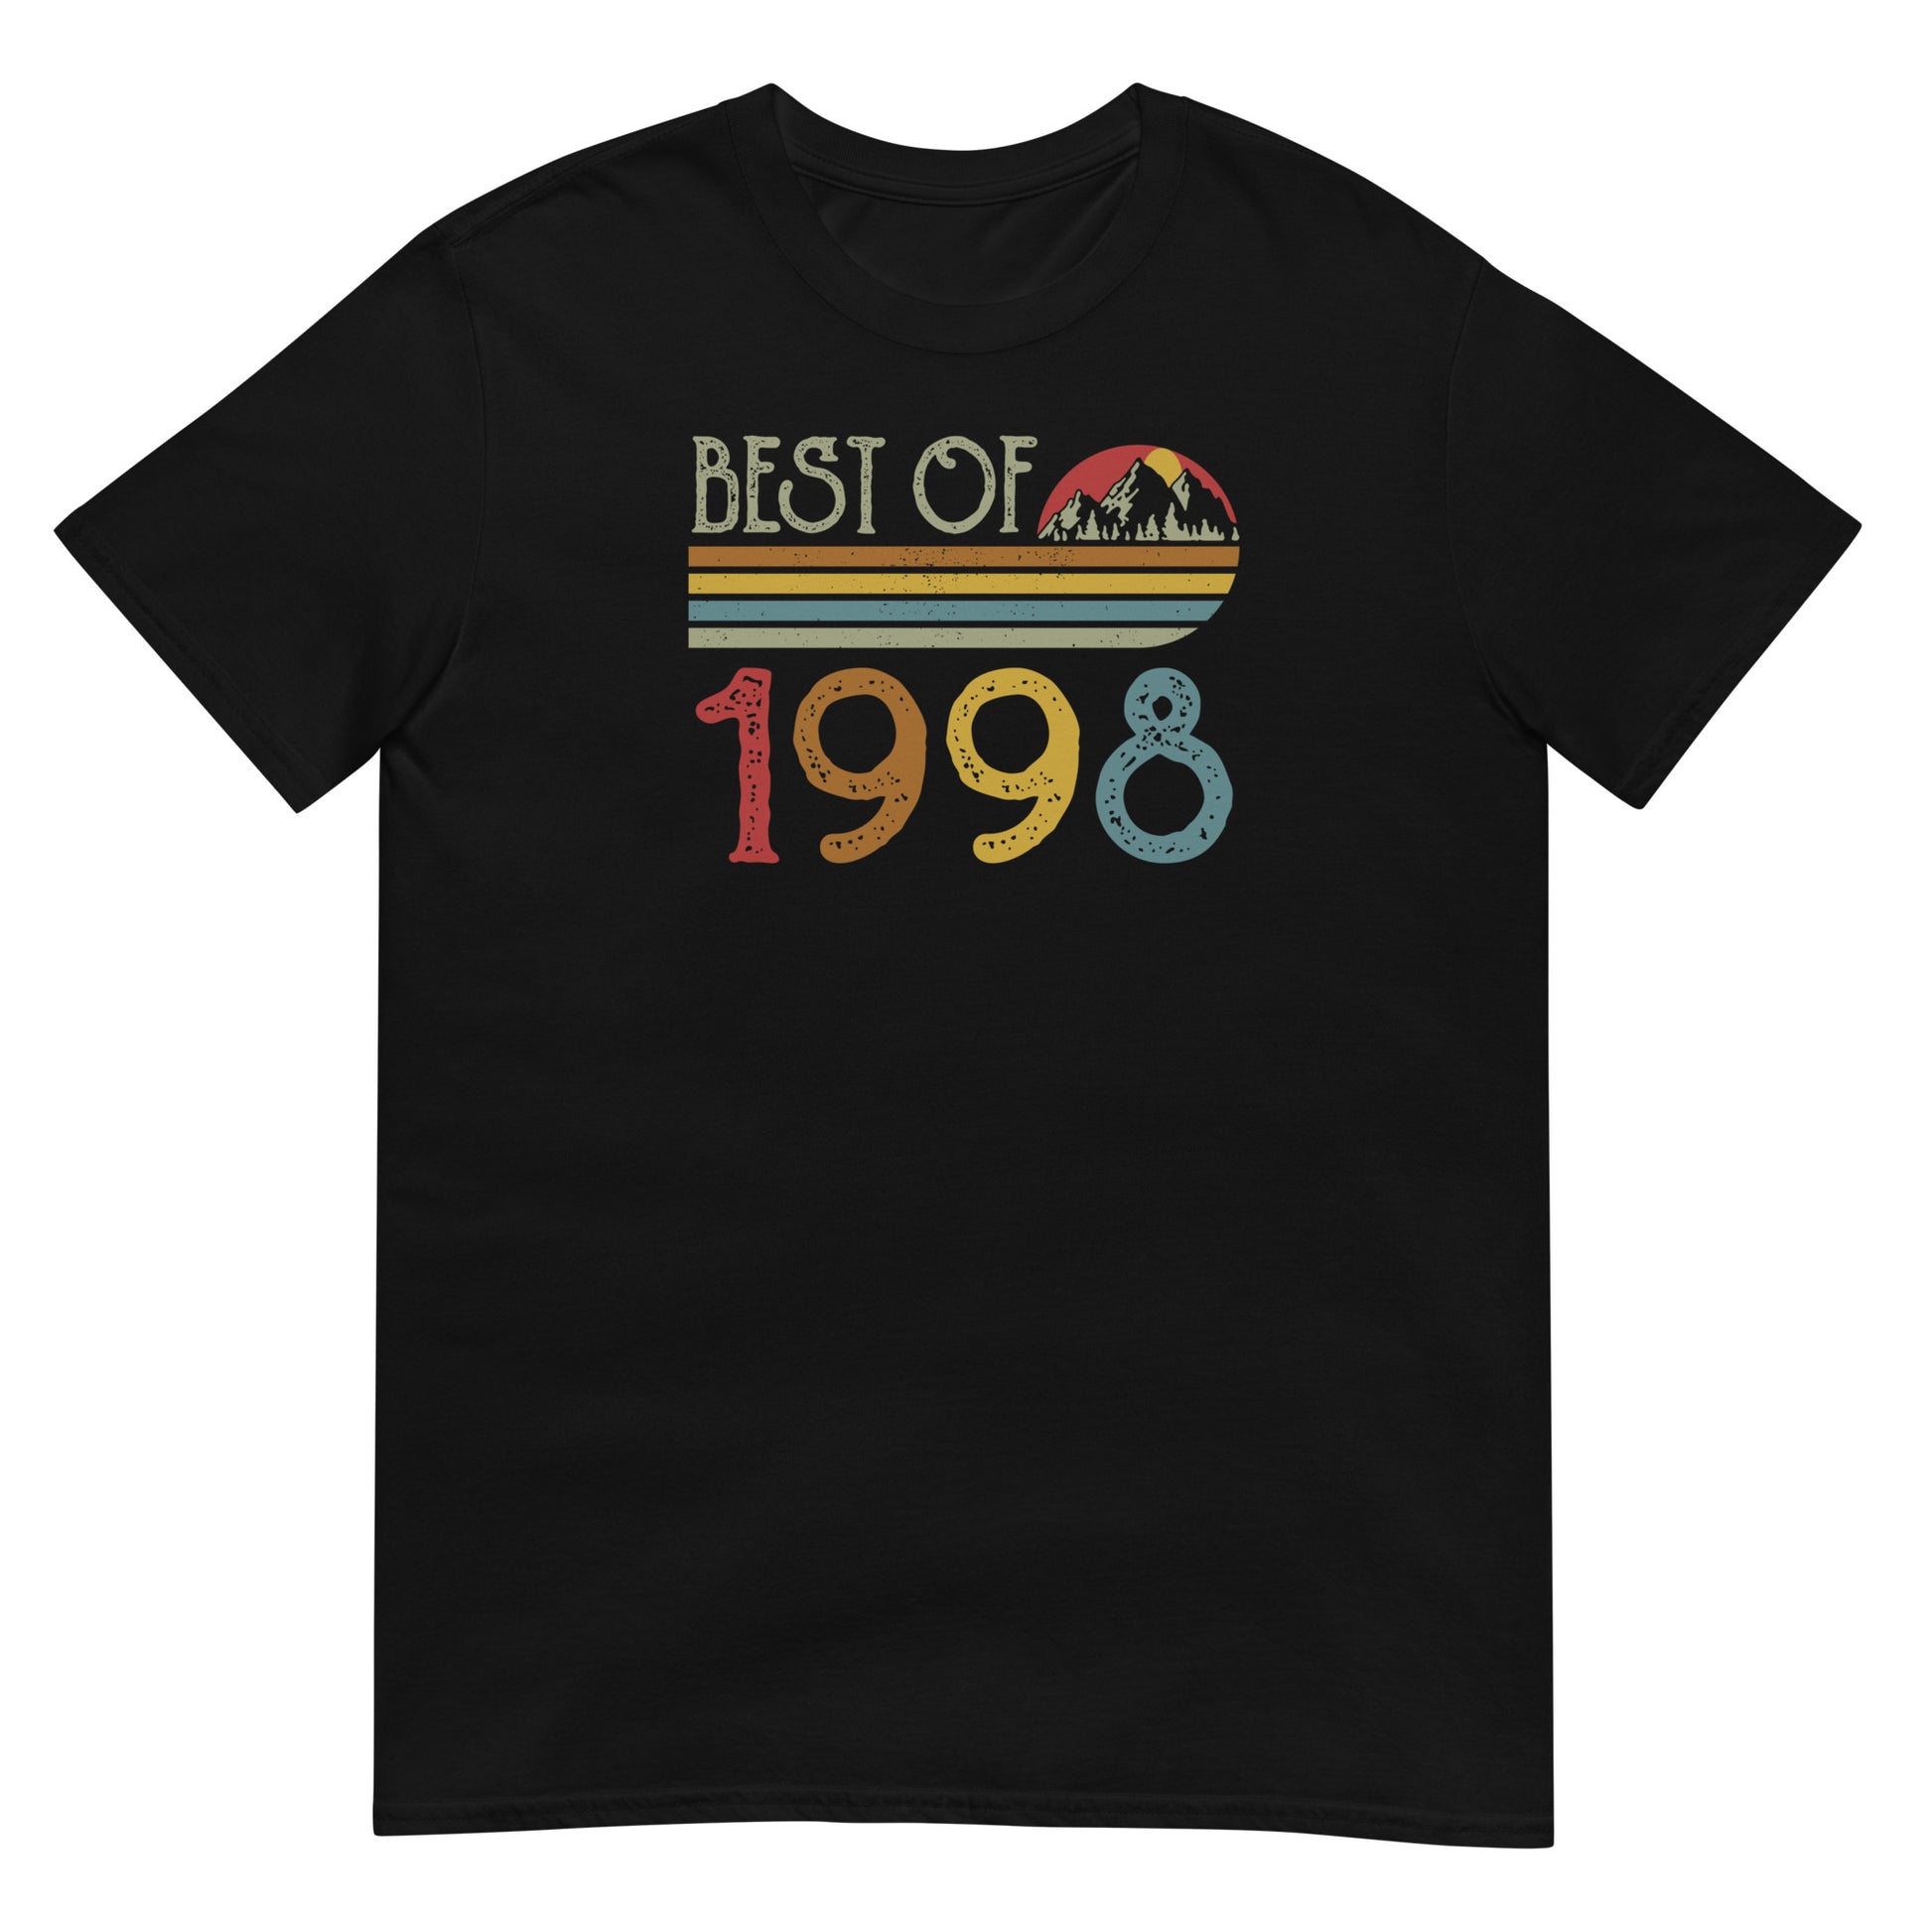 Camiseta Best Of 1998 - Cumpleaños